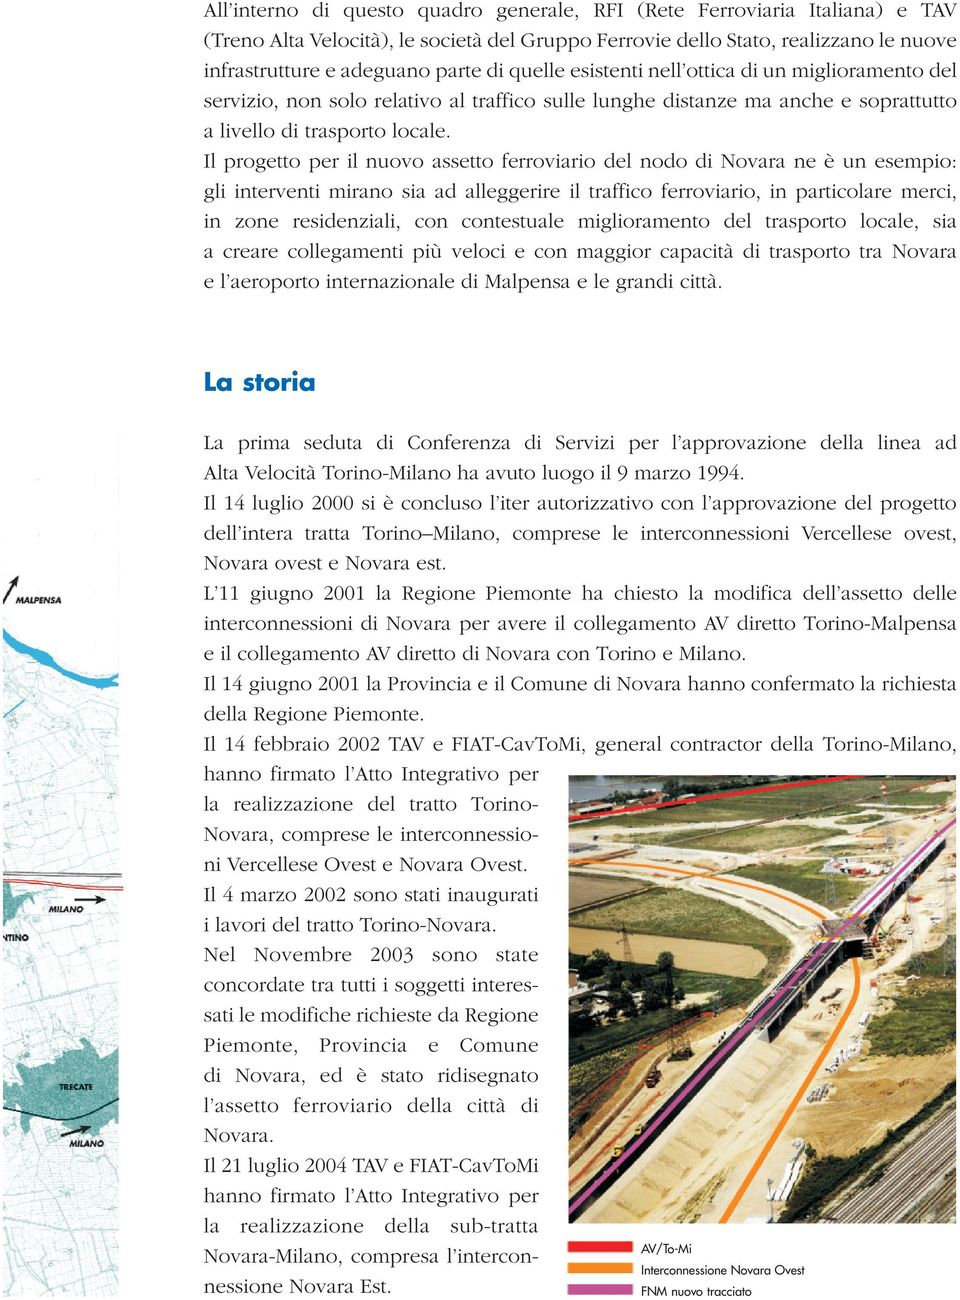 Il progetto per il nuovo assetto ferroviario del nodo di Novara ne è un esempio: gli interventi mirano sia ad alleggerire il traffico ferroviario, in particolare merci, in zone residenziali, con